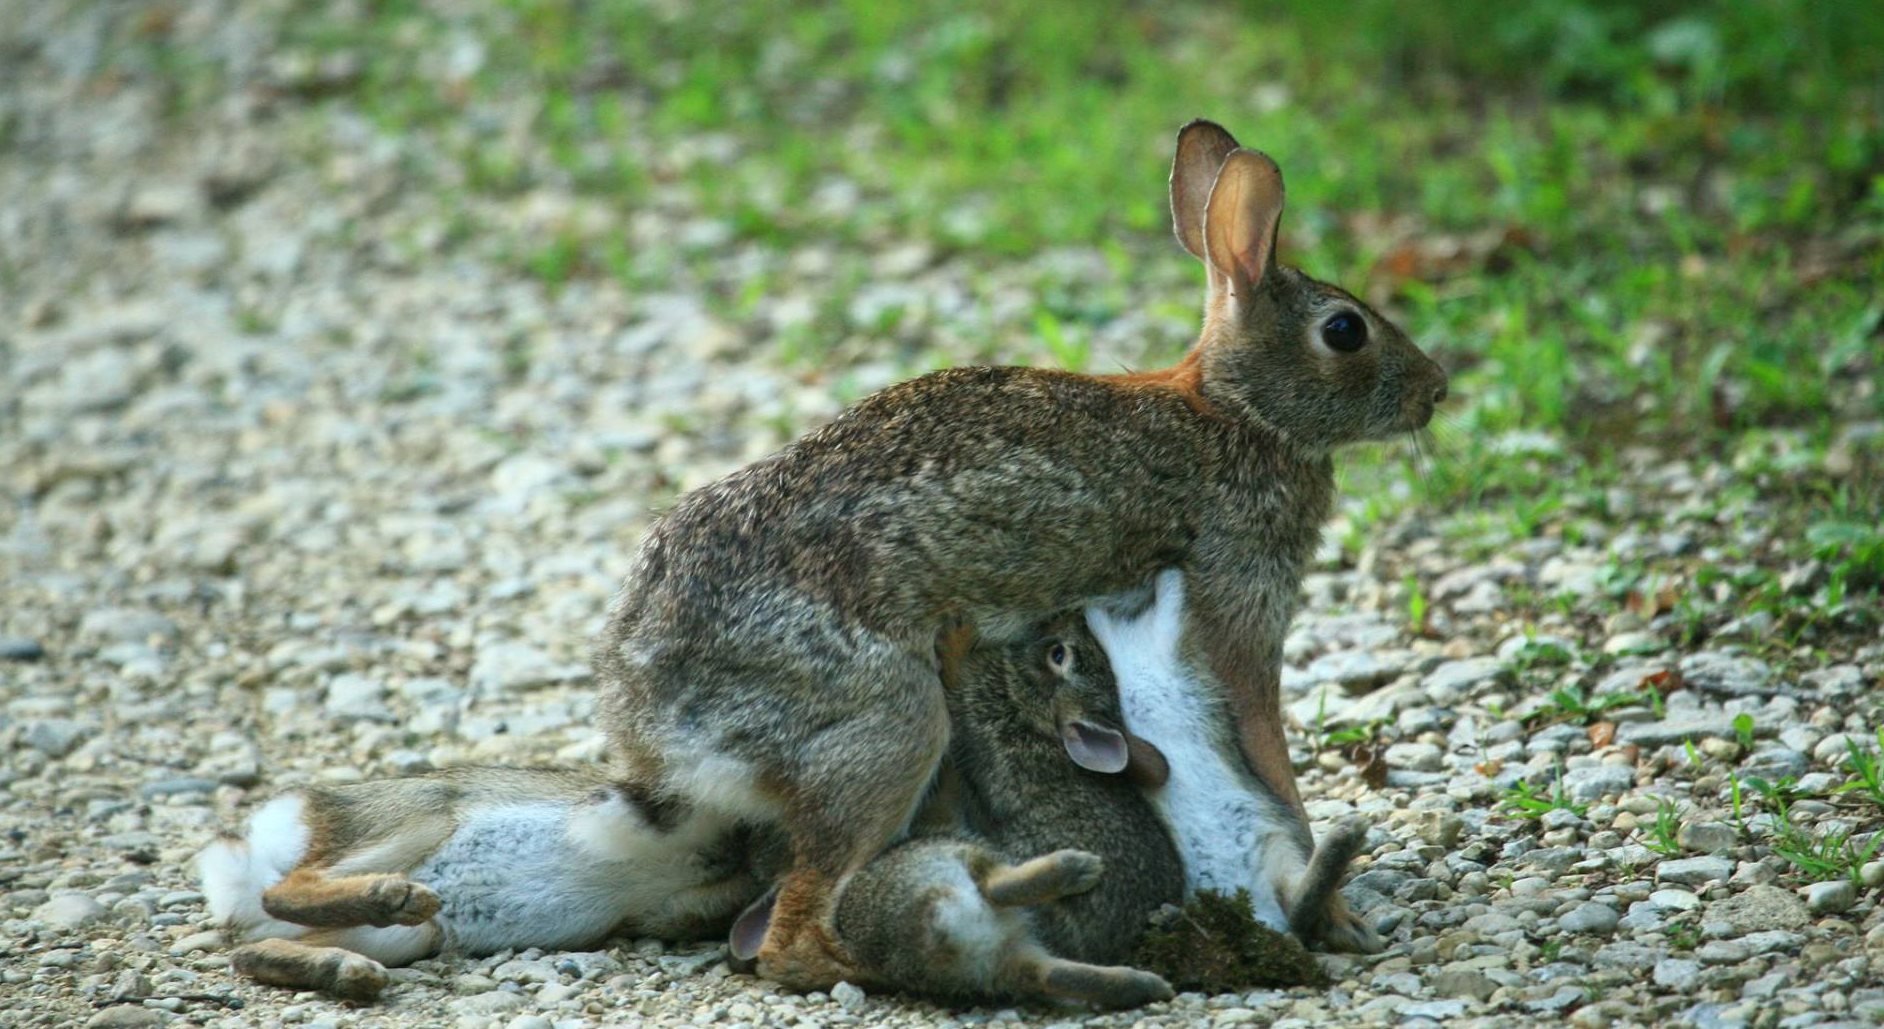 bunnies and rabbits